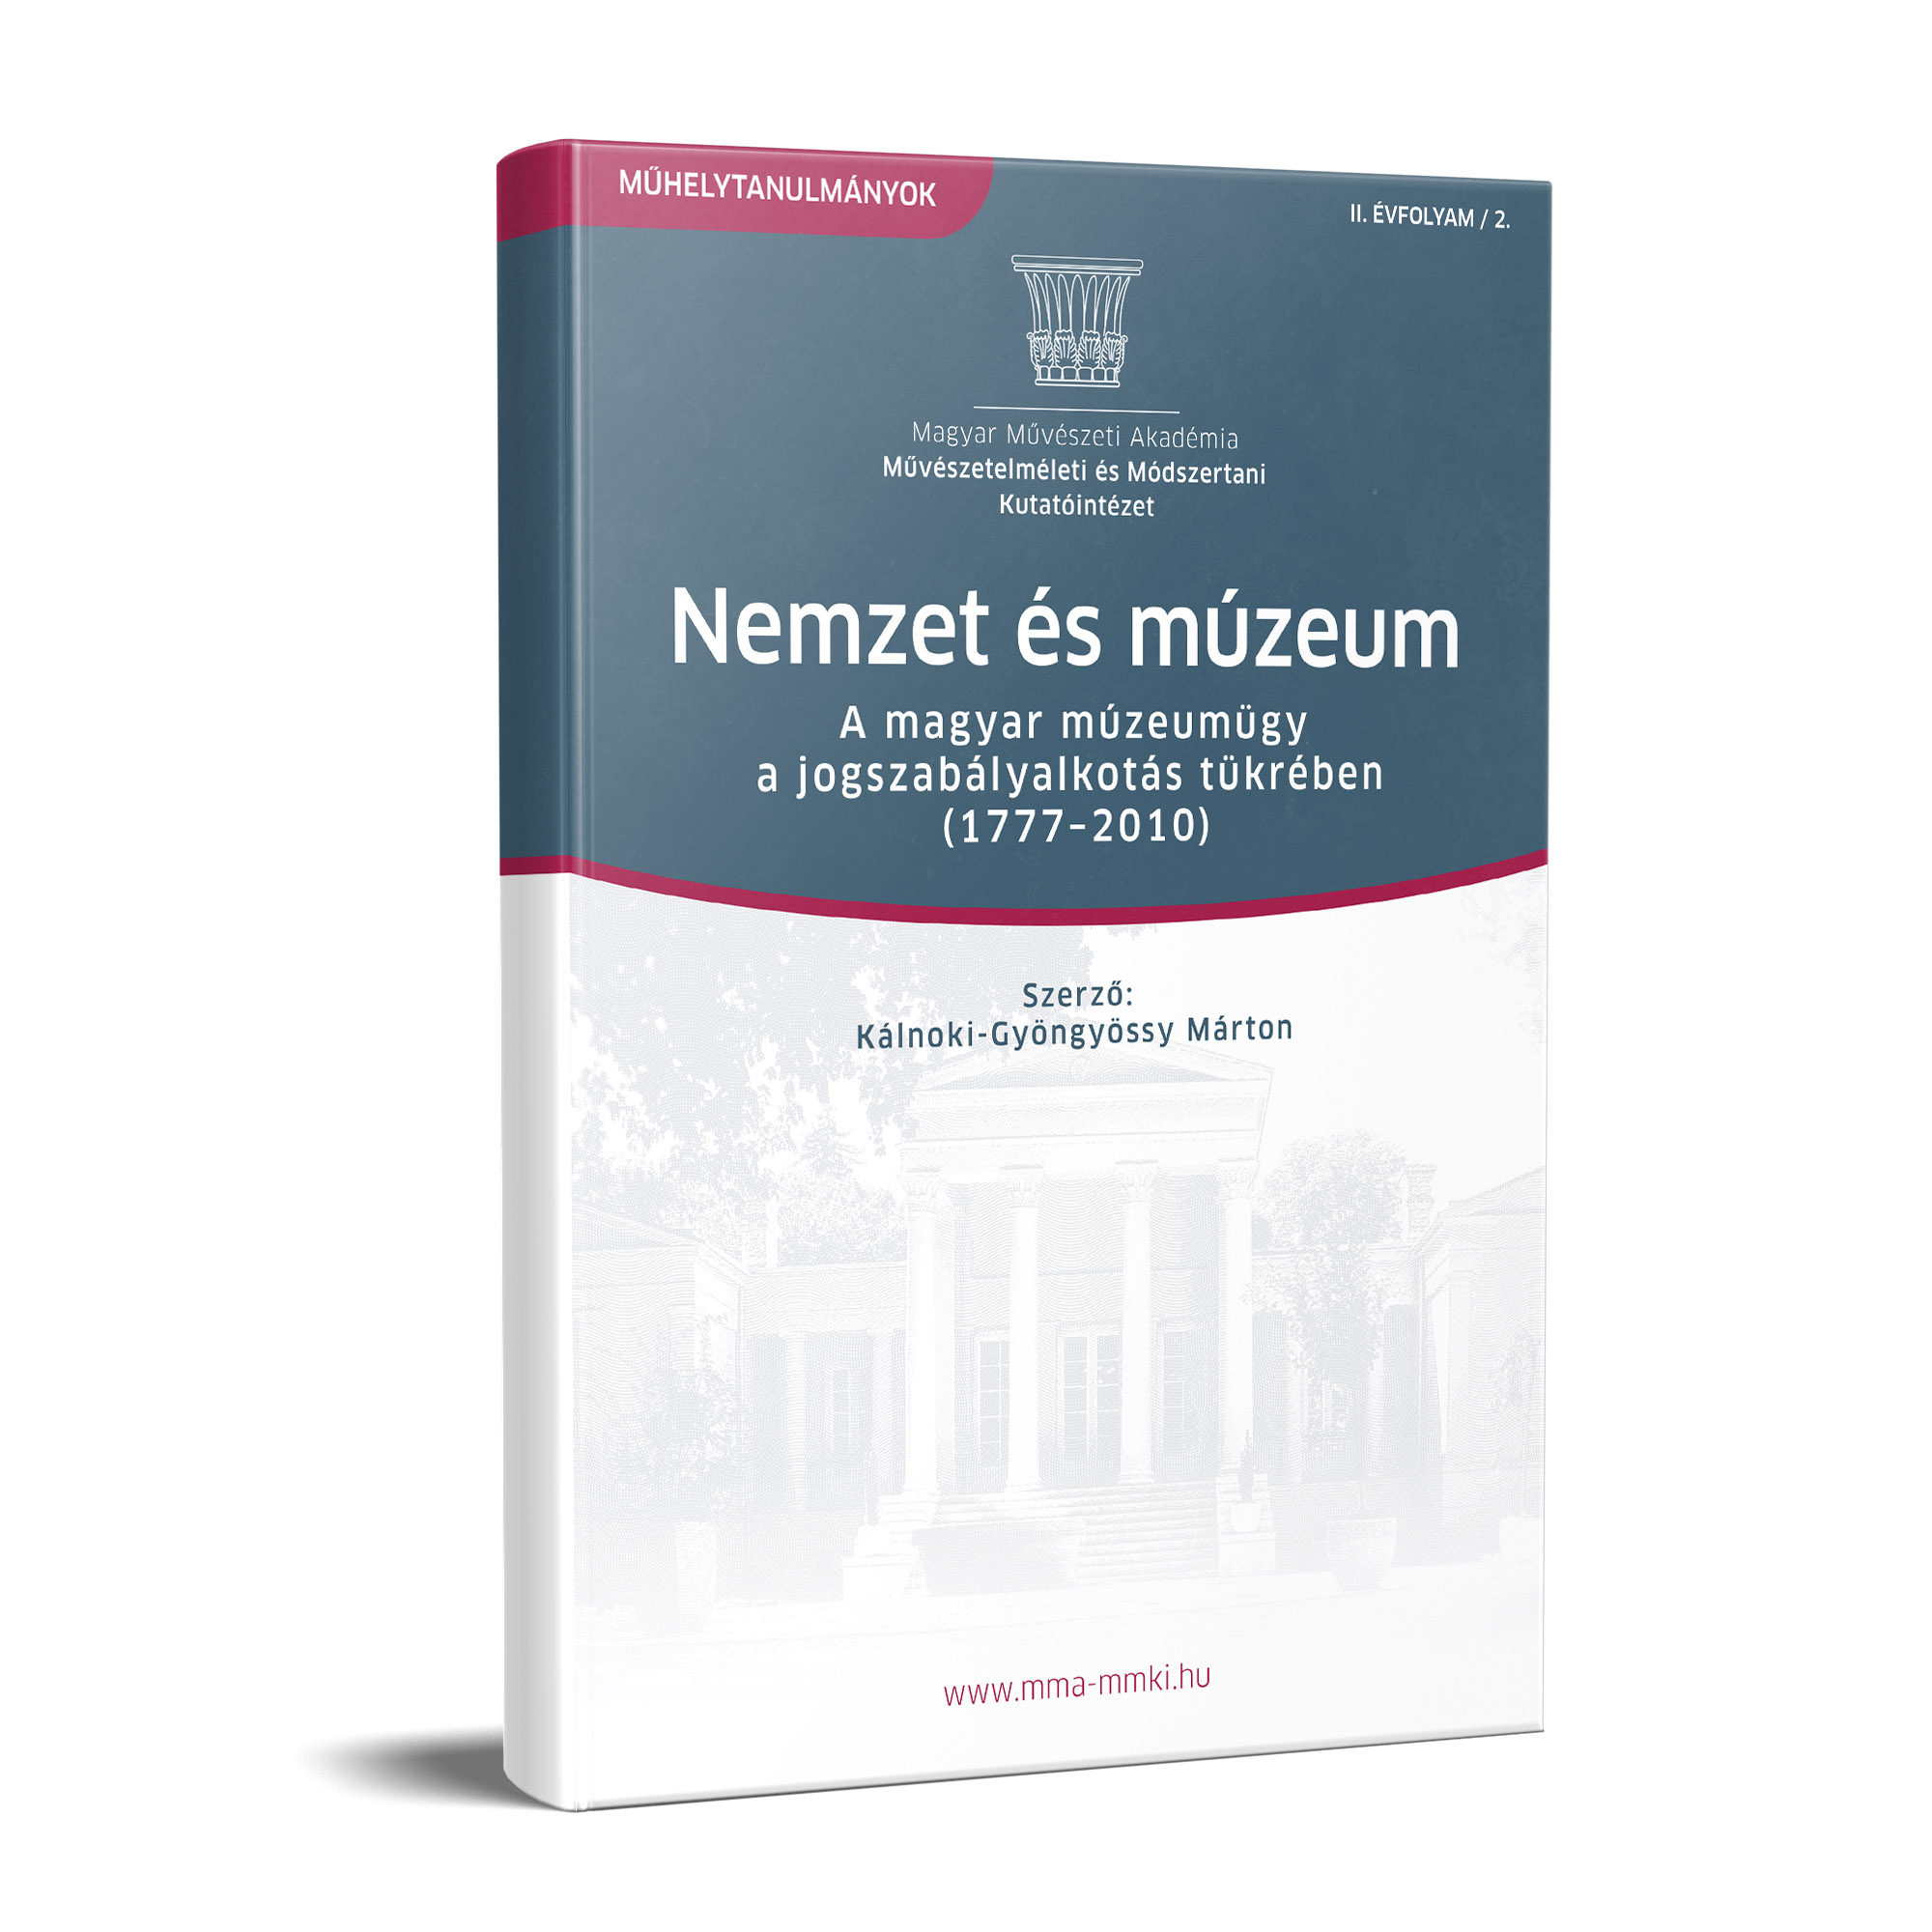 Nemzet és múzeum – A magyar múzeumügy a jogszabályalkotás tükrében (1777-2010)